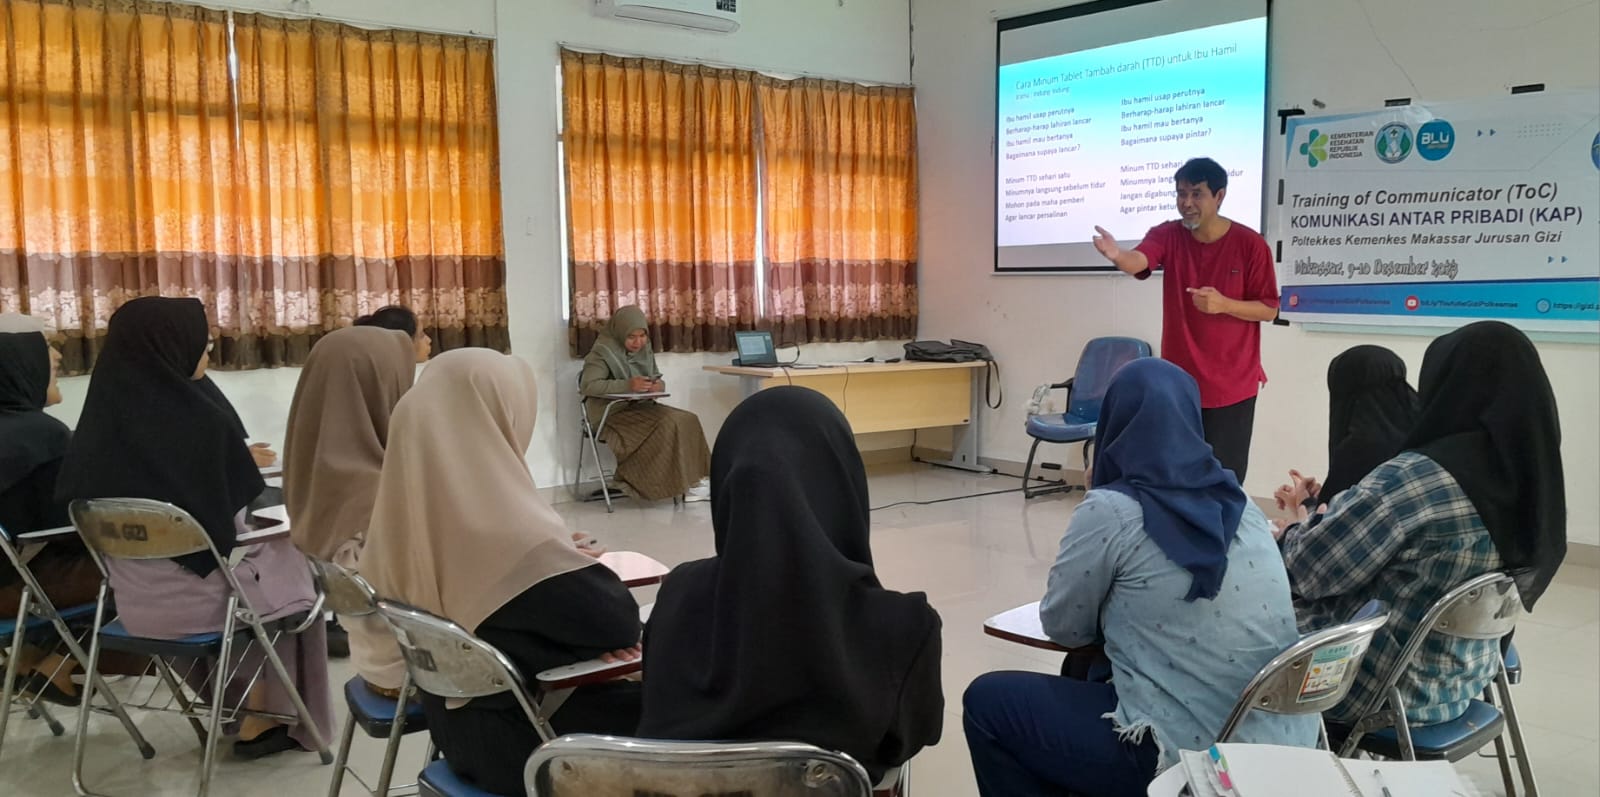 Poltekkes Kemenkes Makassar Jurusan Gizi: Membangun Model Edukasi Inovatif melalui Pendekatan Komunikasi Antar Pribadi (KAP)